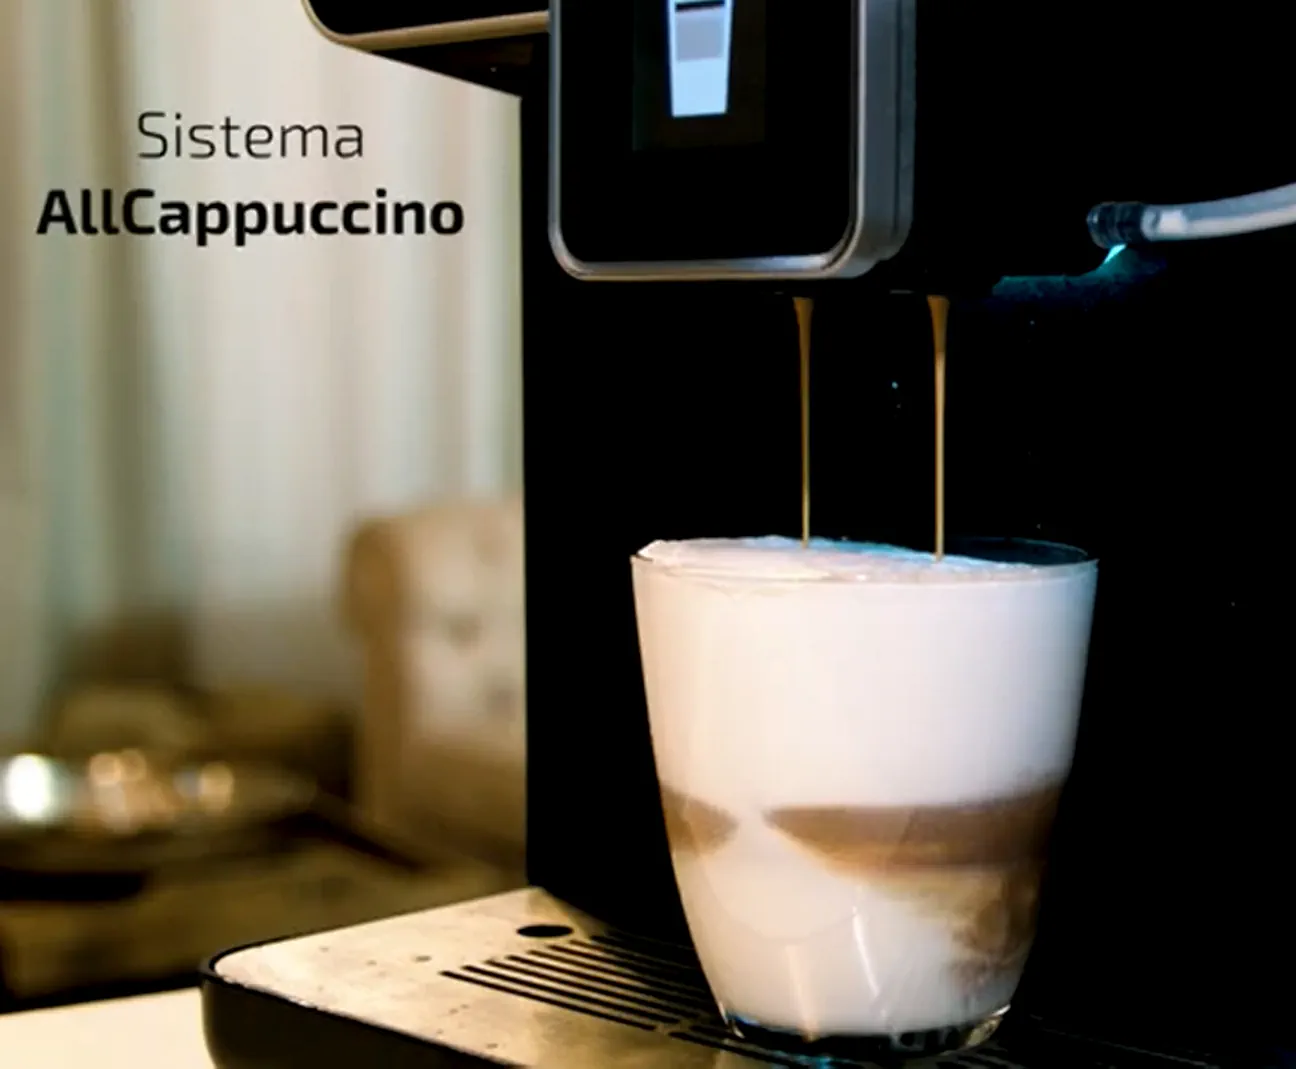 Cecotec Cafetera Superautomática con Molinillo Power Matic-ccino 8000 Touch  Serie Nera S. 1400 W, Pantalla Táctil, Sistema All Capuccino y Café